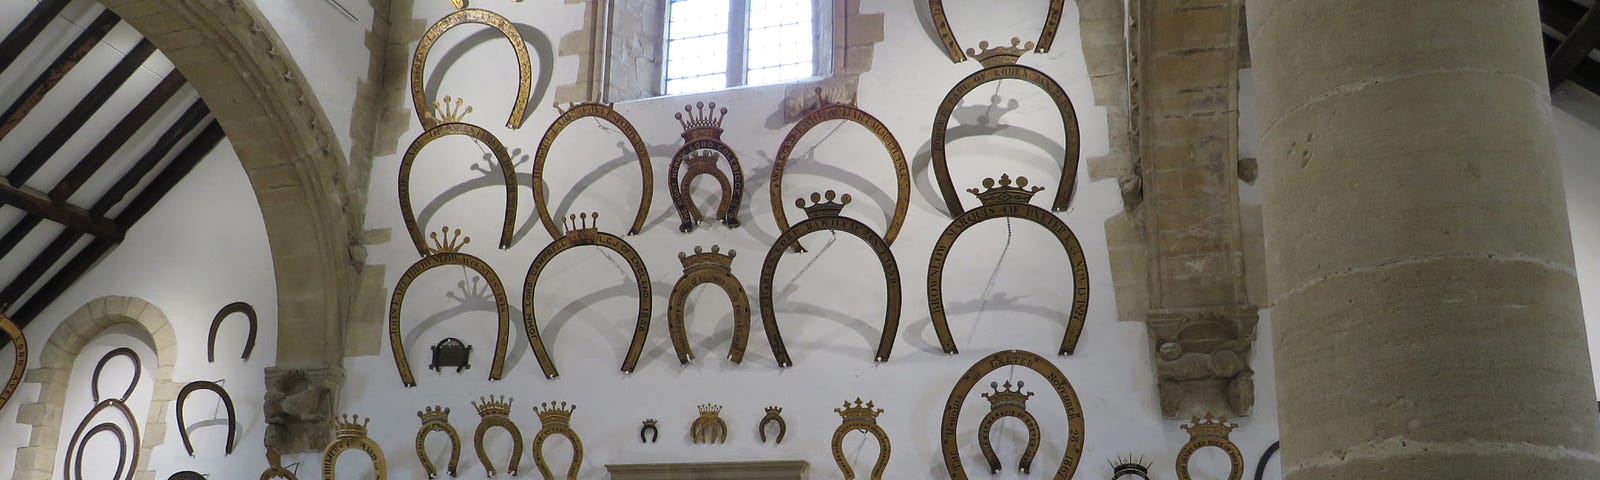 Oakham Castle, Rutland, England. A side wall full of horseshoe tributes.